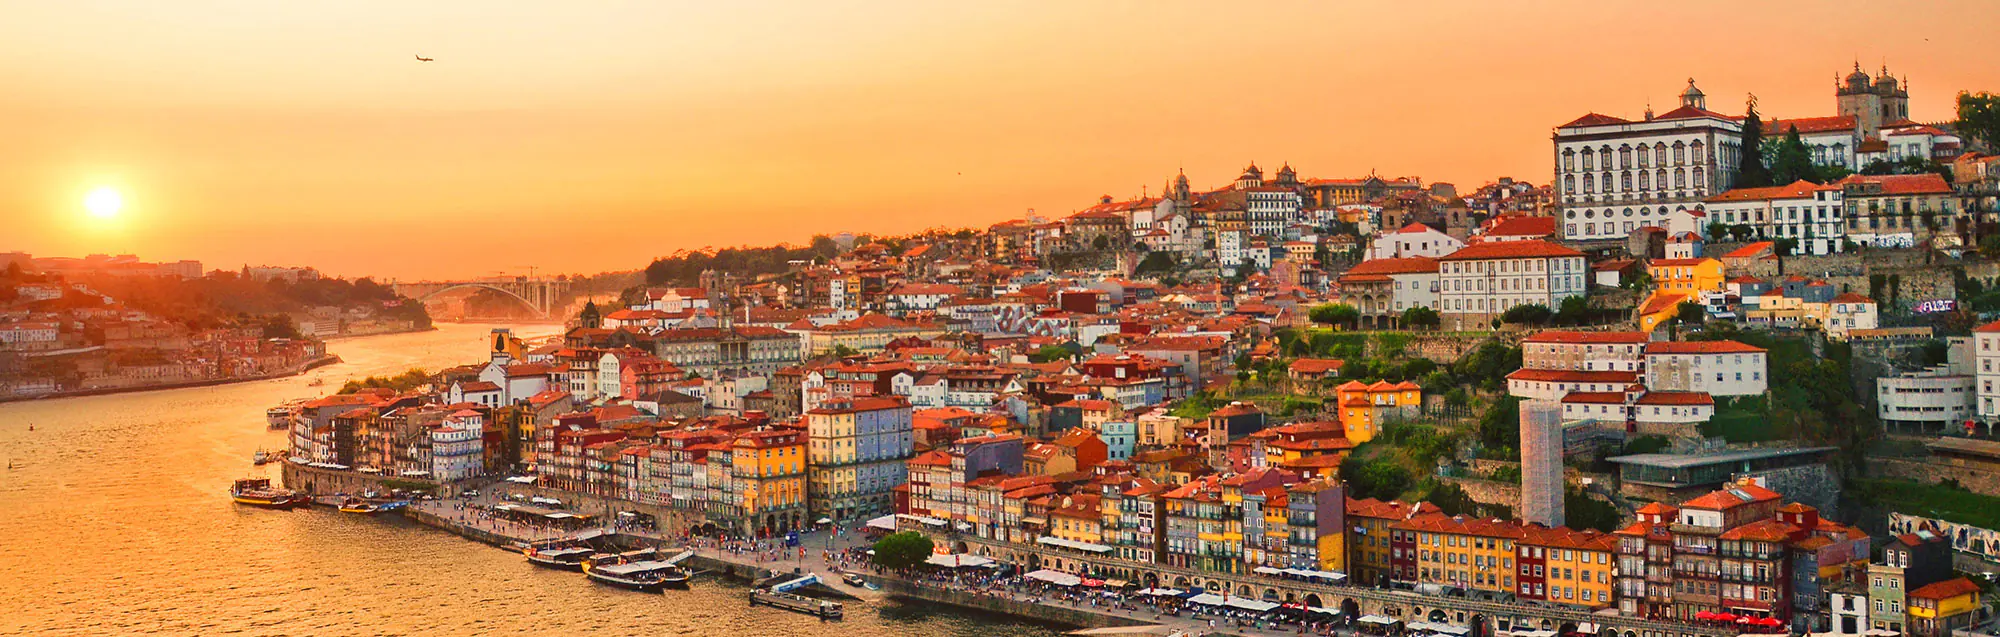 Pasos para obtener tu visa para estudiar en Portugal